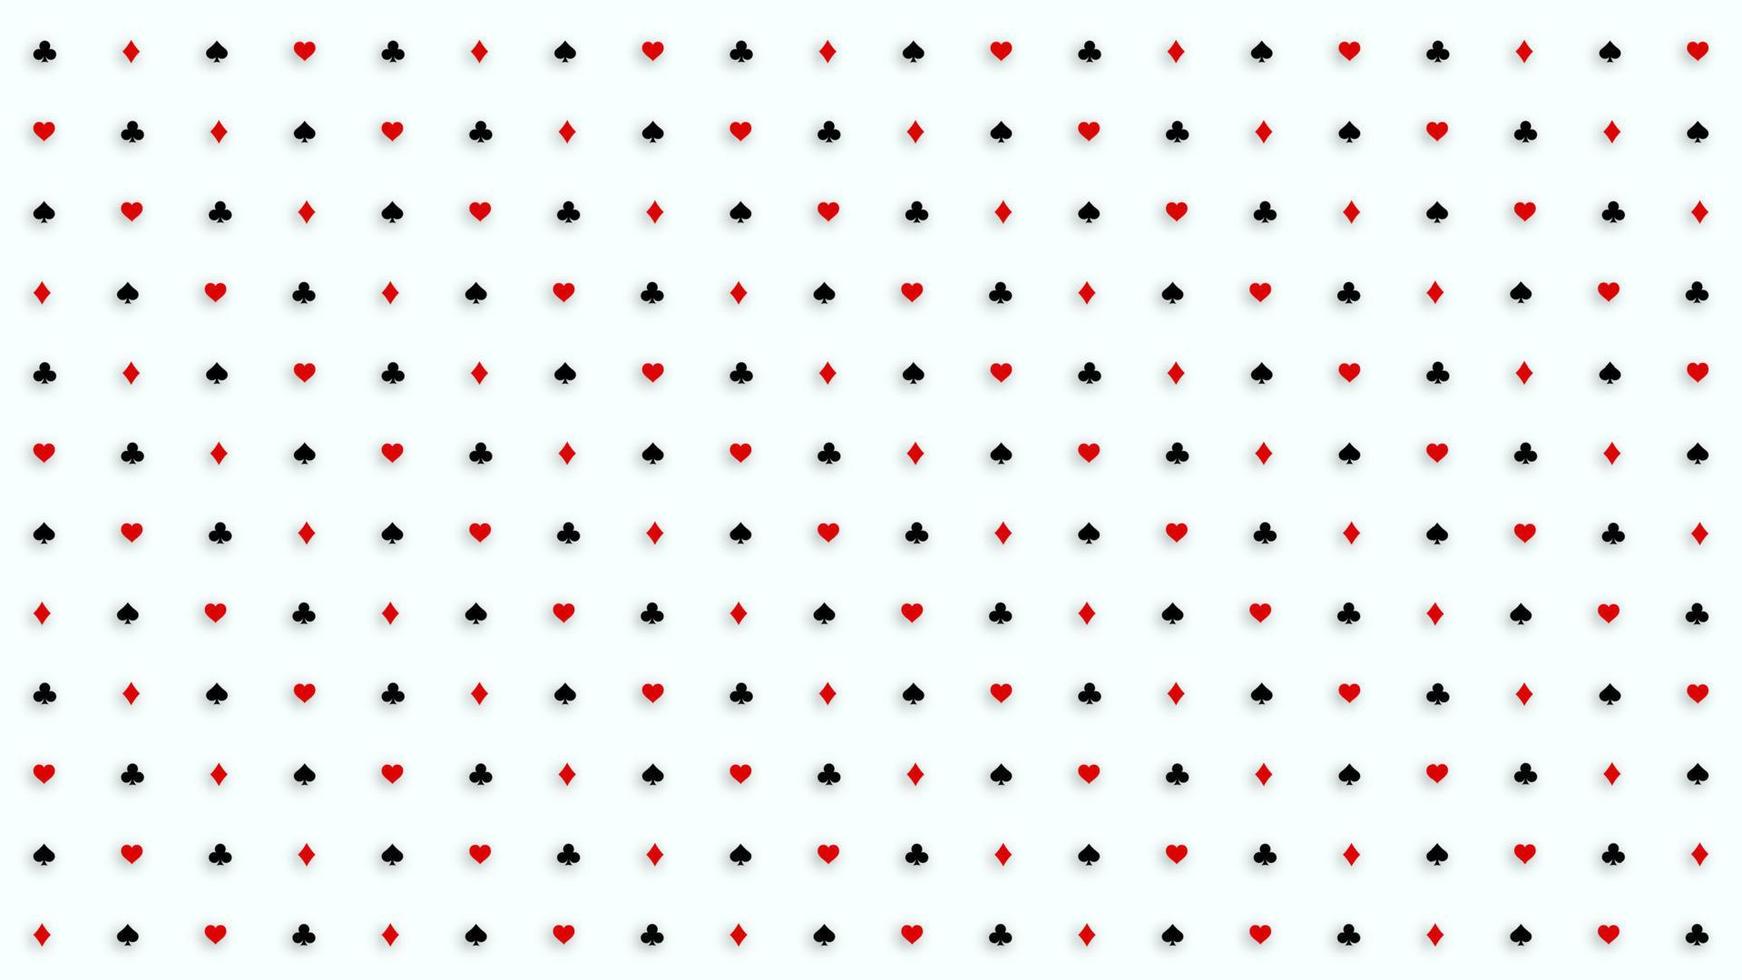 póquer y casino. patrón de trajes de cartas de póquer. ilustración vectorial. vector